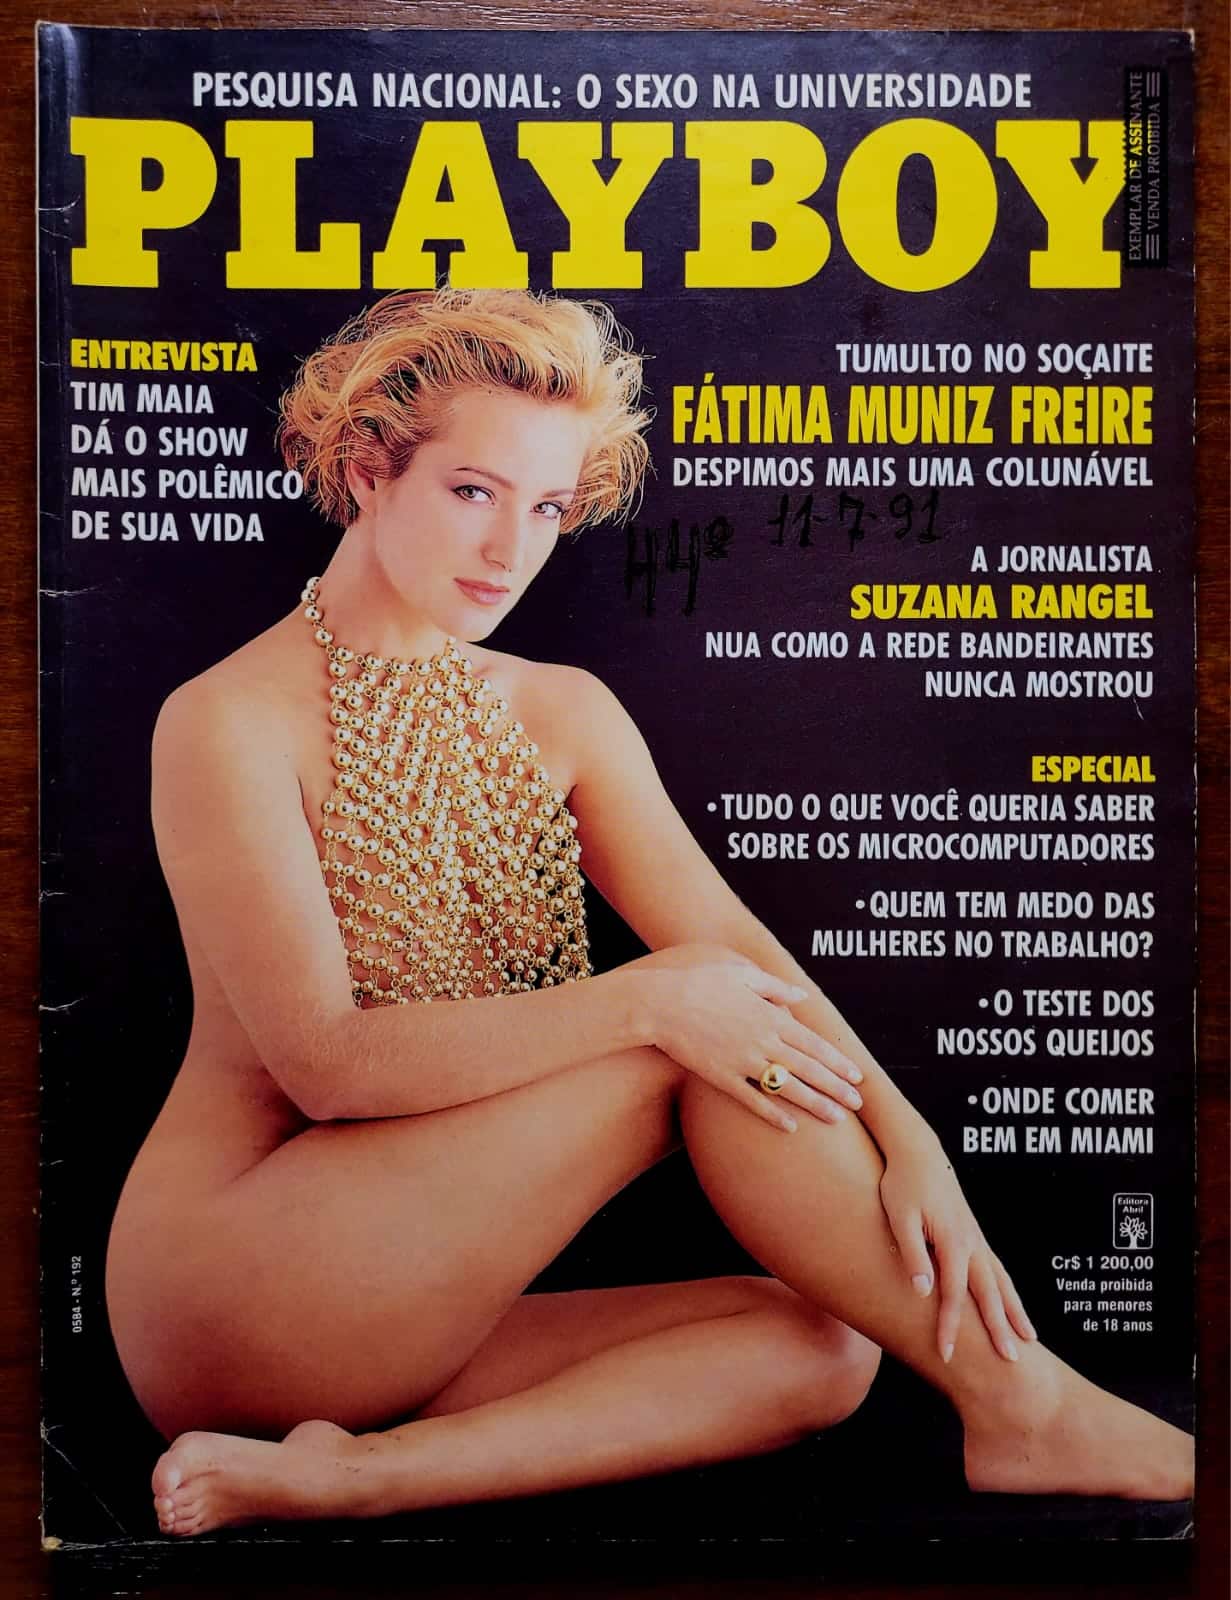 Playboy No 192 Fatima Muniz Freire 1 Casa do Colecionador